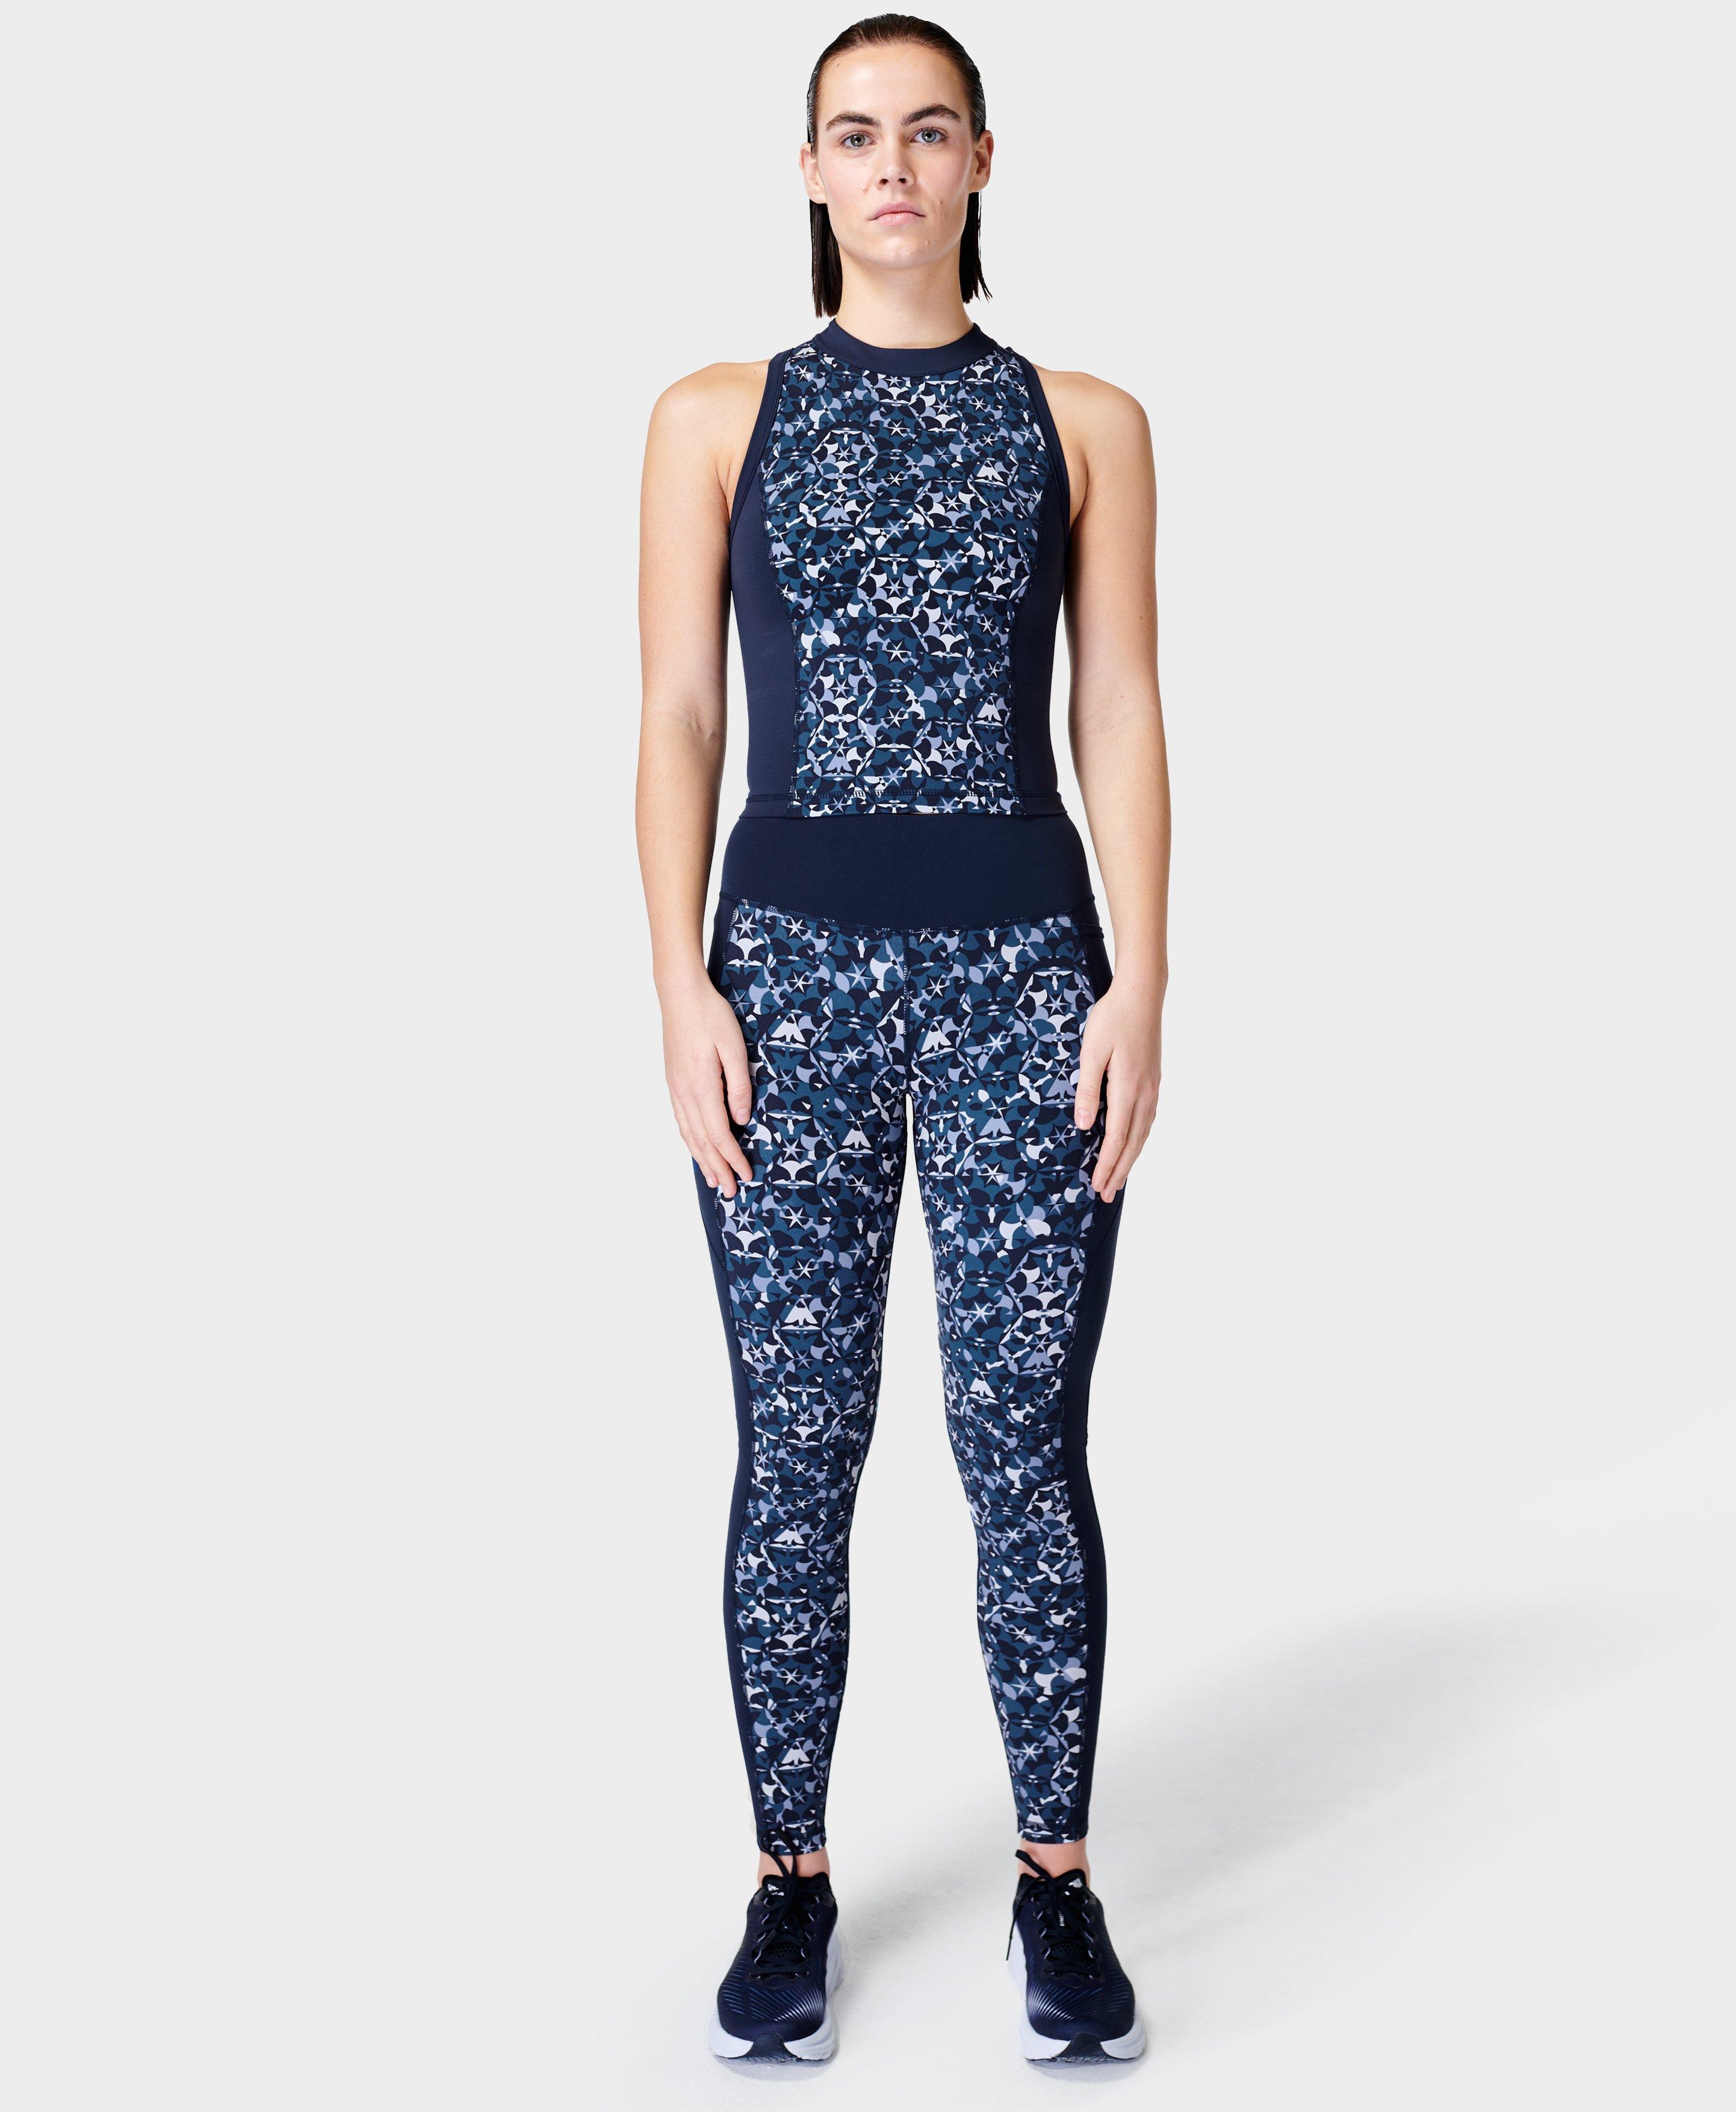 Power Zip Back Workout Tank Top - Blue Kaleidoscope Geo Print, Women's  Vests